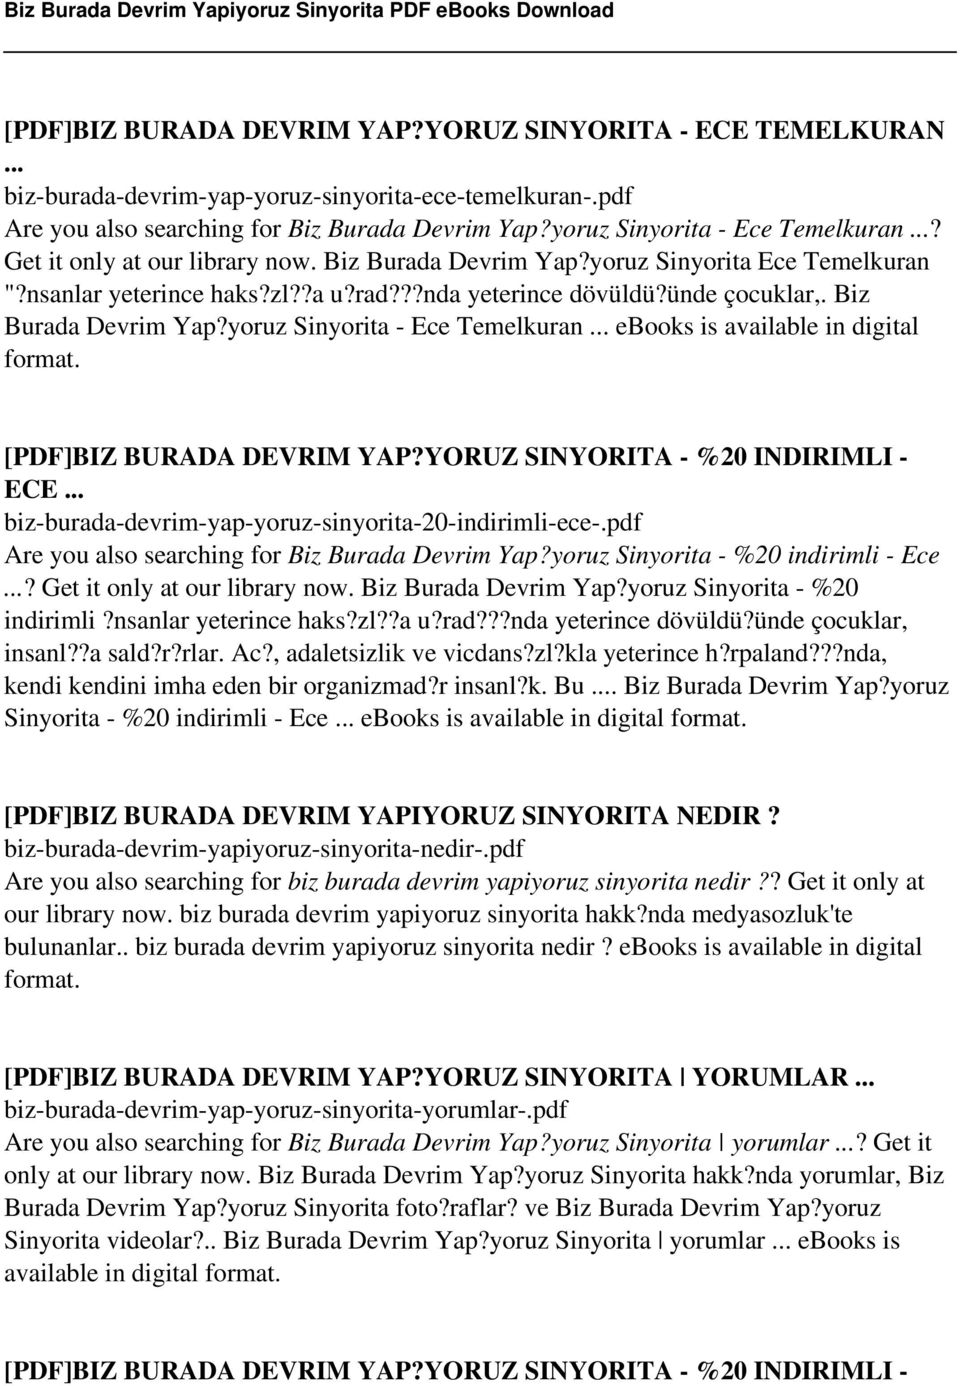 Biz Burada Devrim Yap?yoruz Sinyorita - Ece Temelkuran... ebooks is available in digital format. [PDF]BIZ BURADA DEVRIM YAP?YORUZ SINYORITA - %20 INDIRIMLI - ECE.